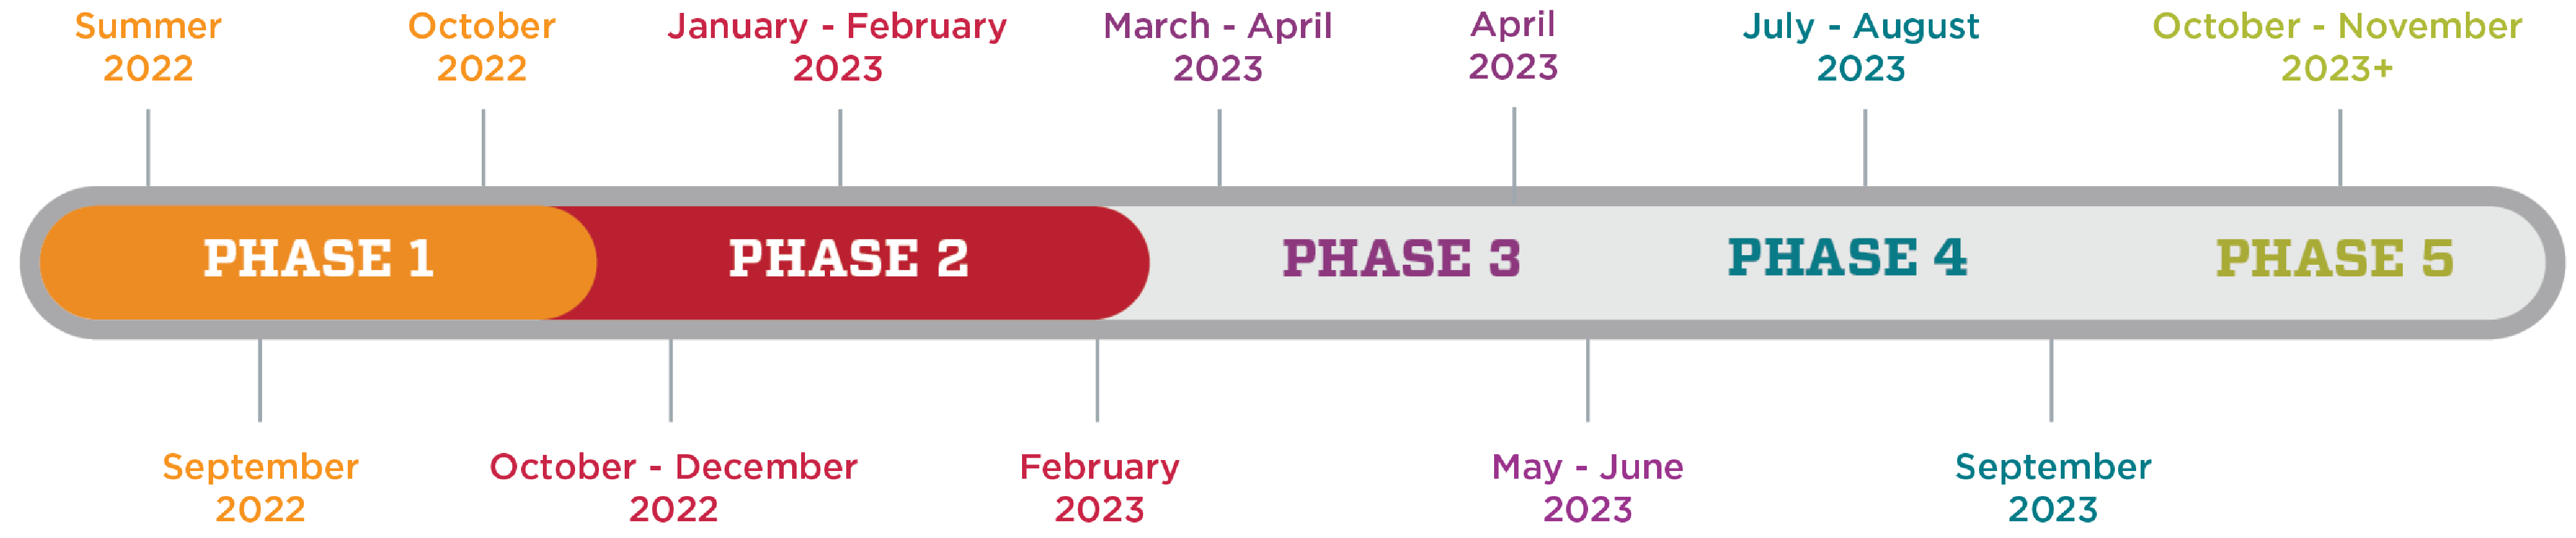 Գրաֆիկ, որը ցույց է տալիս HSC-ի կլիմայի հետազոտության ժամանակացույցը: Փուլ 1-ը 2022 թվականի ամառից մինչև 2022 թվականի հոկտեմբերն է։ 2-րդ փուլը՝ 2022 թվականի հոկտեմբերից մինչև 2023 թվականի փետրվարը։ 3-րդ փուլը՝ 2023 թվականի մարտից մինչև 2023 թվականի հունիսը։